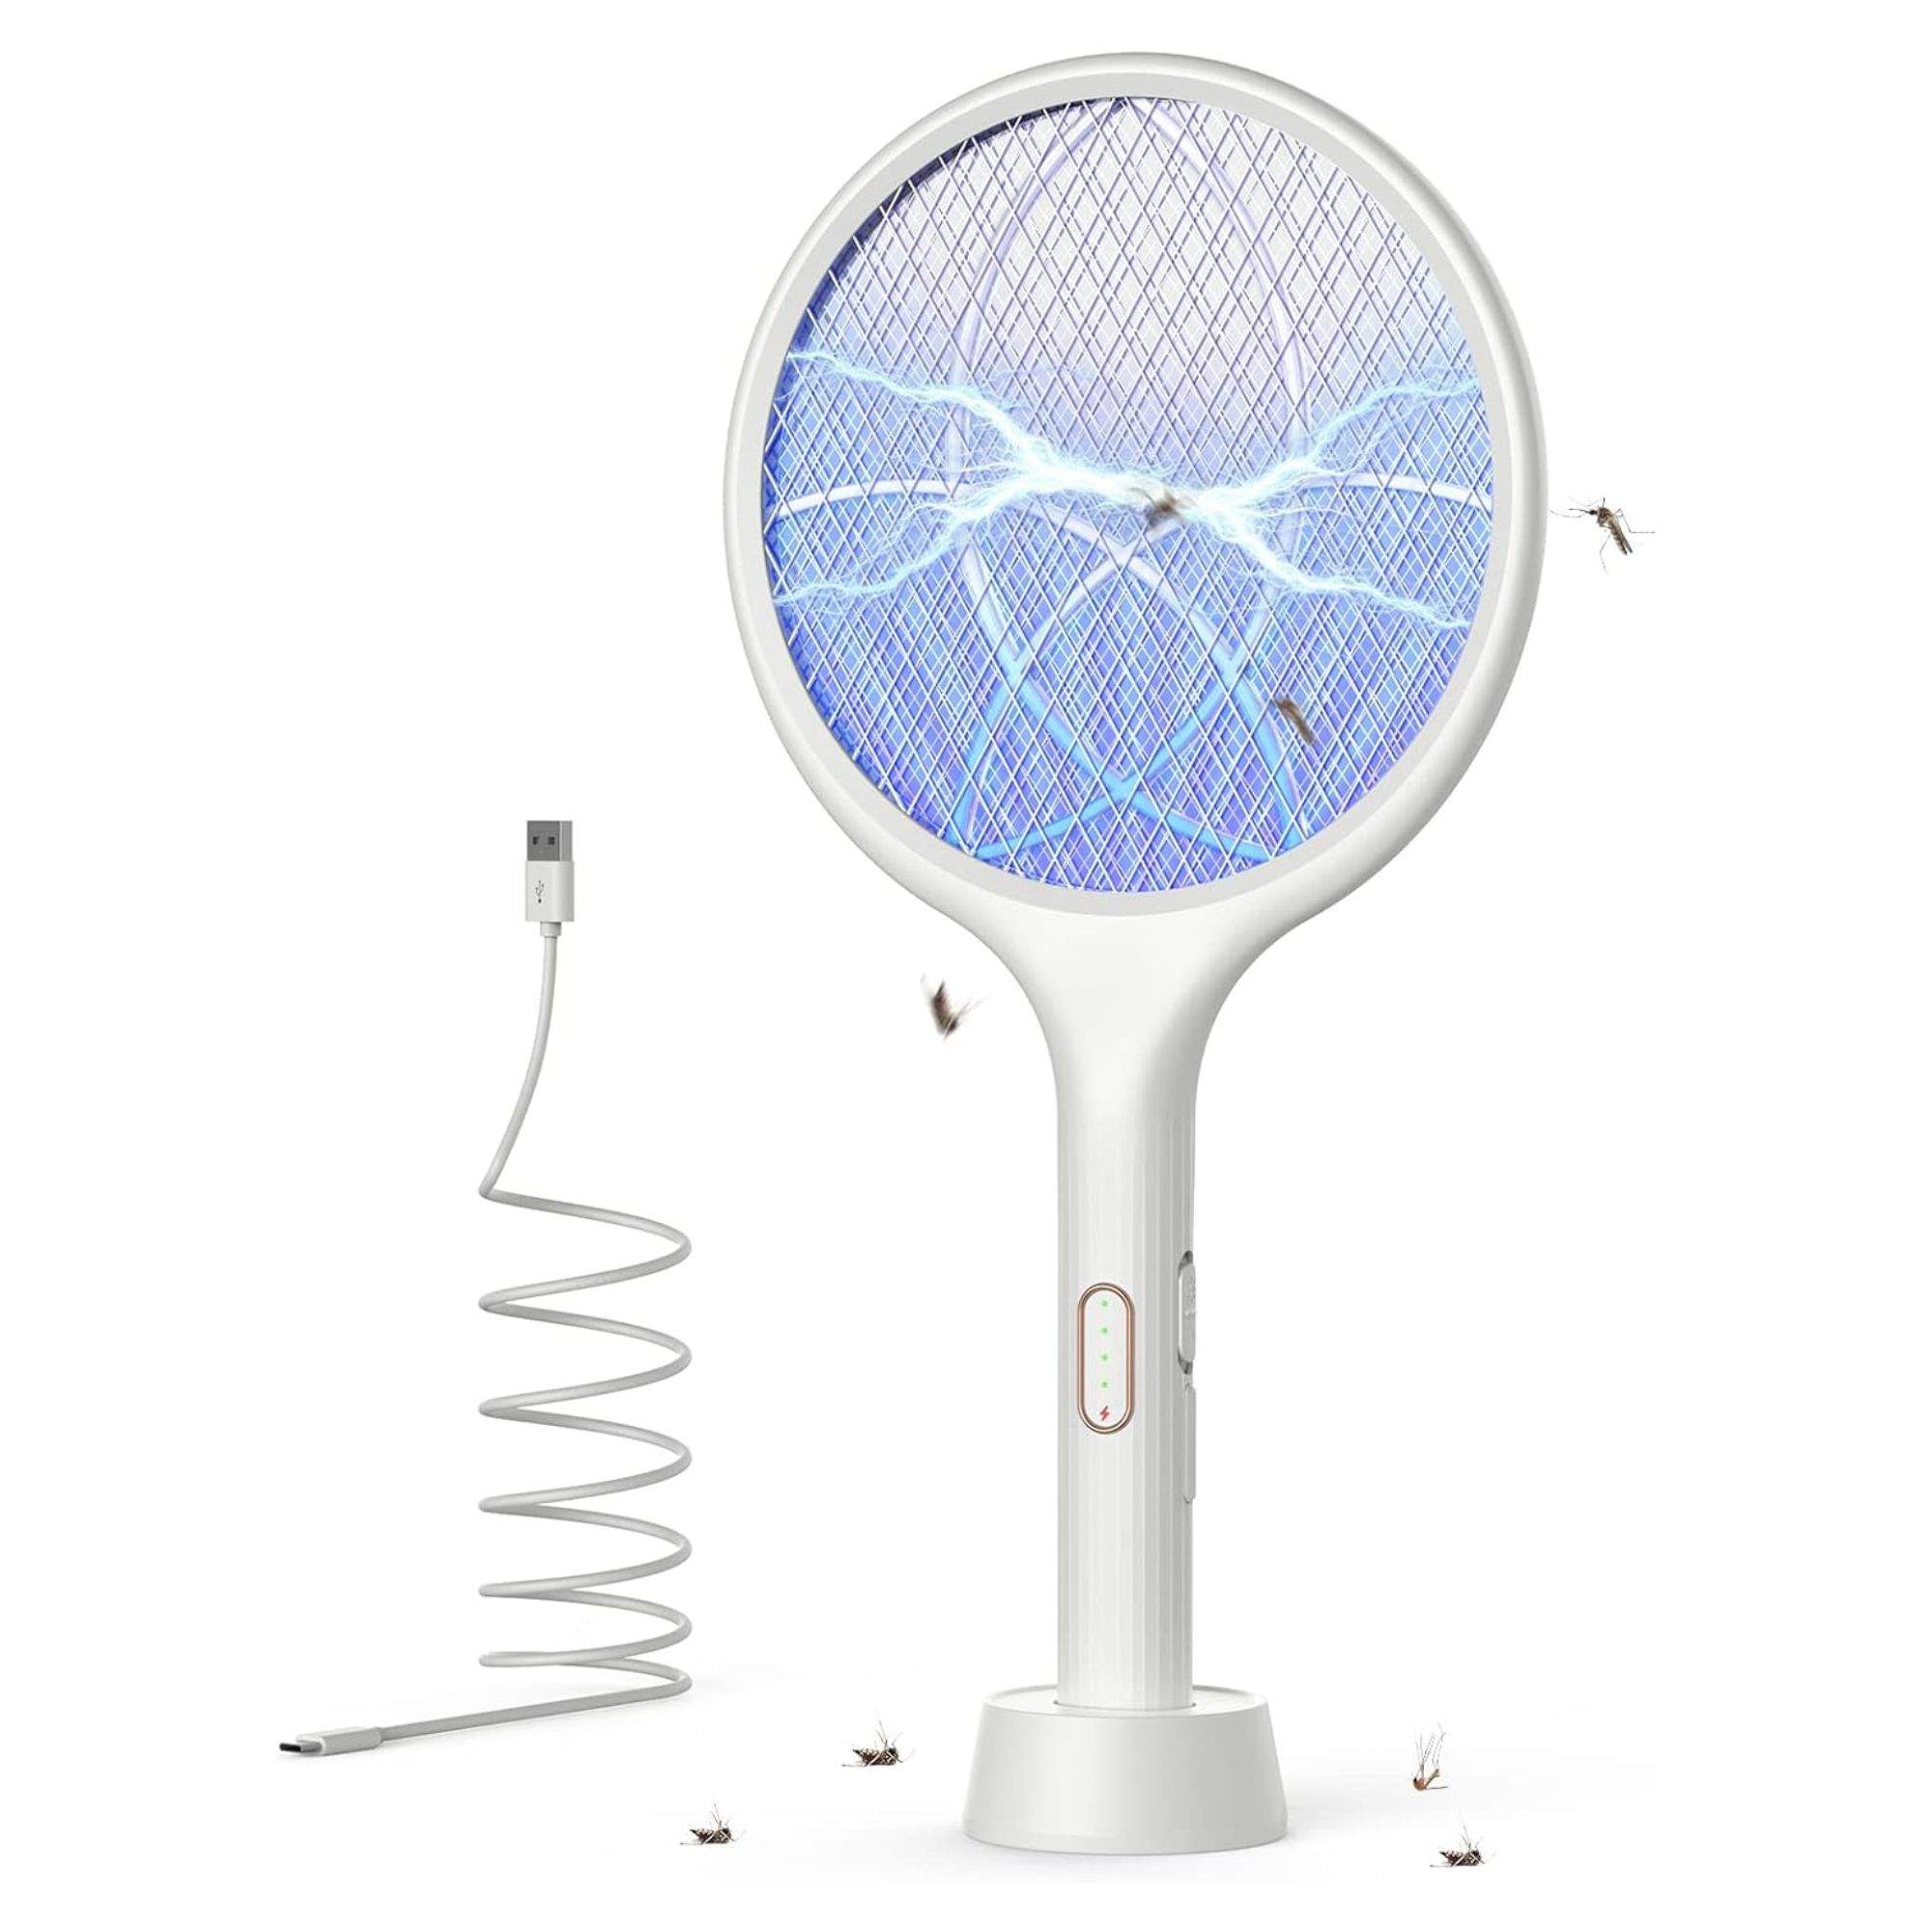 Aquest estiu acomiada't dels mosquits amb aquesta raqueta elèctrica 2 en 1 en oferta a Amazon